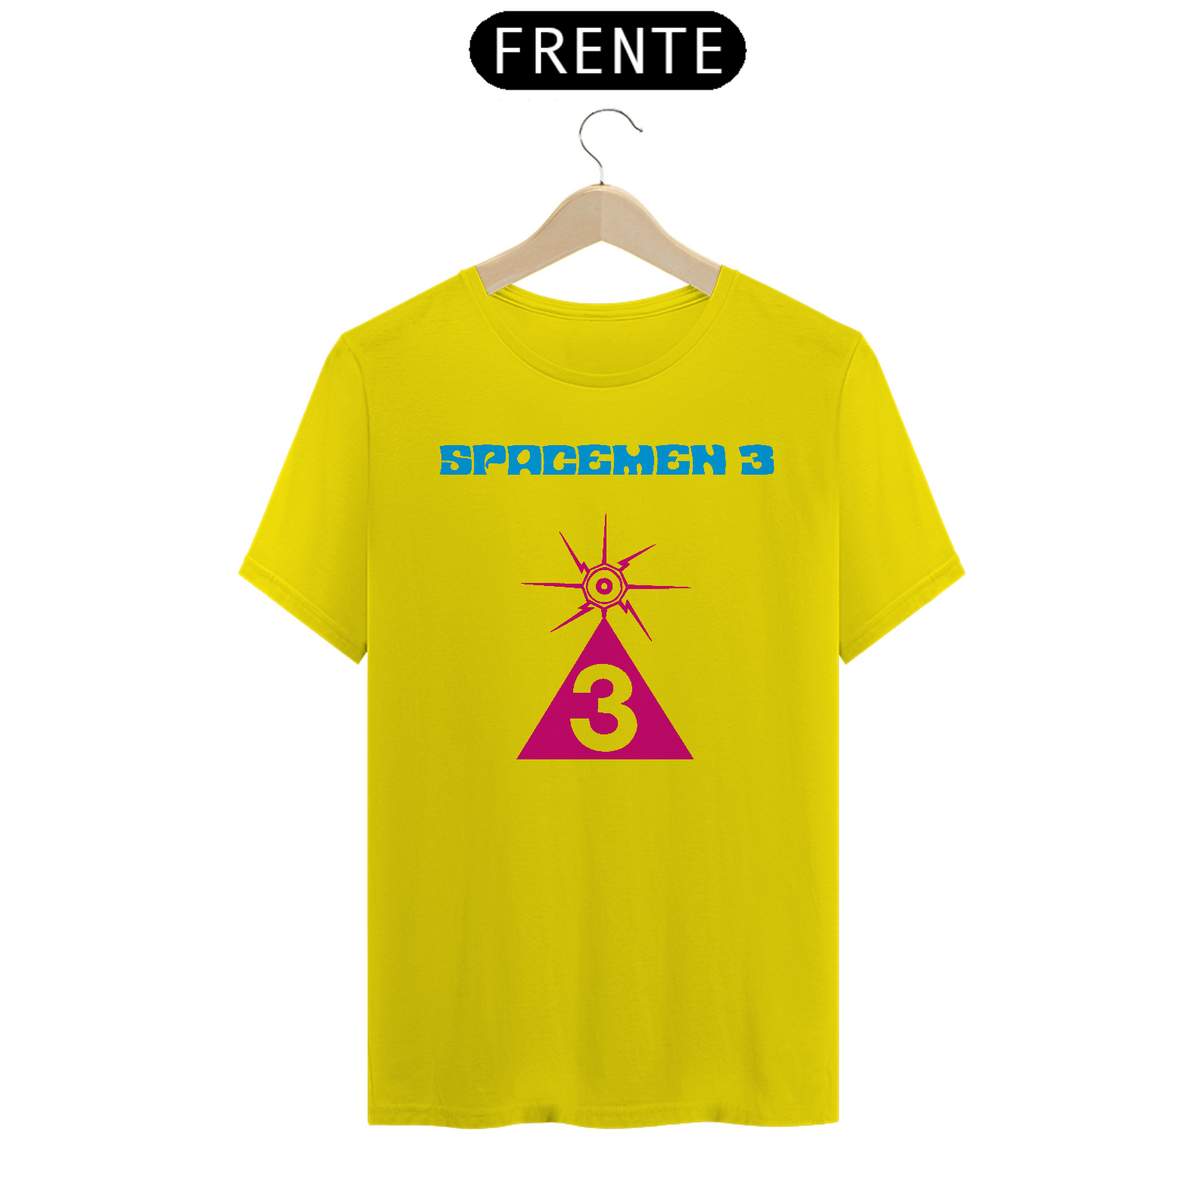 Nome do produto: Spacemen 3